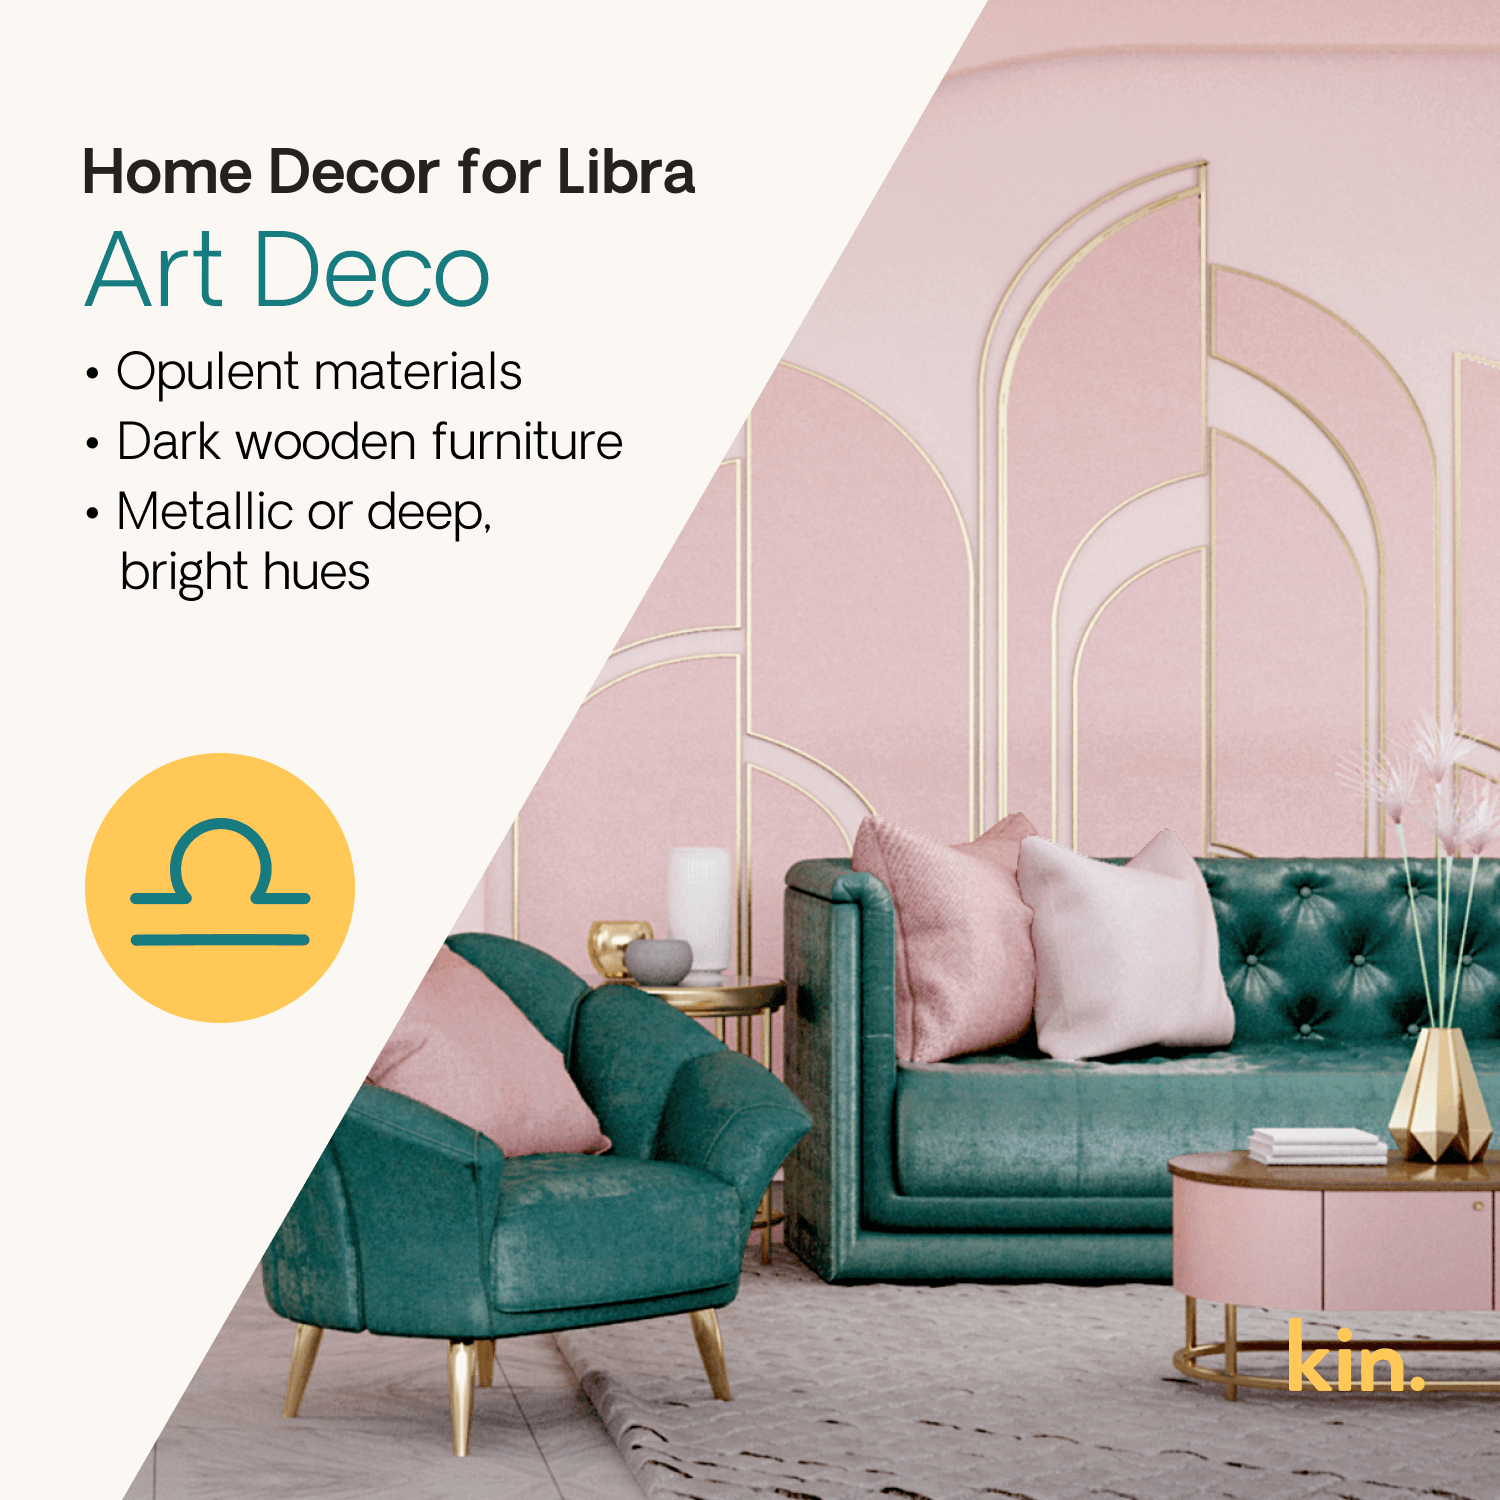 Home Decor for Libra: Art Deco Opulent materials Dark wooden furniture Metallic or deep, bright hues